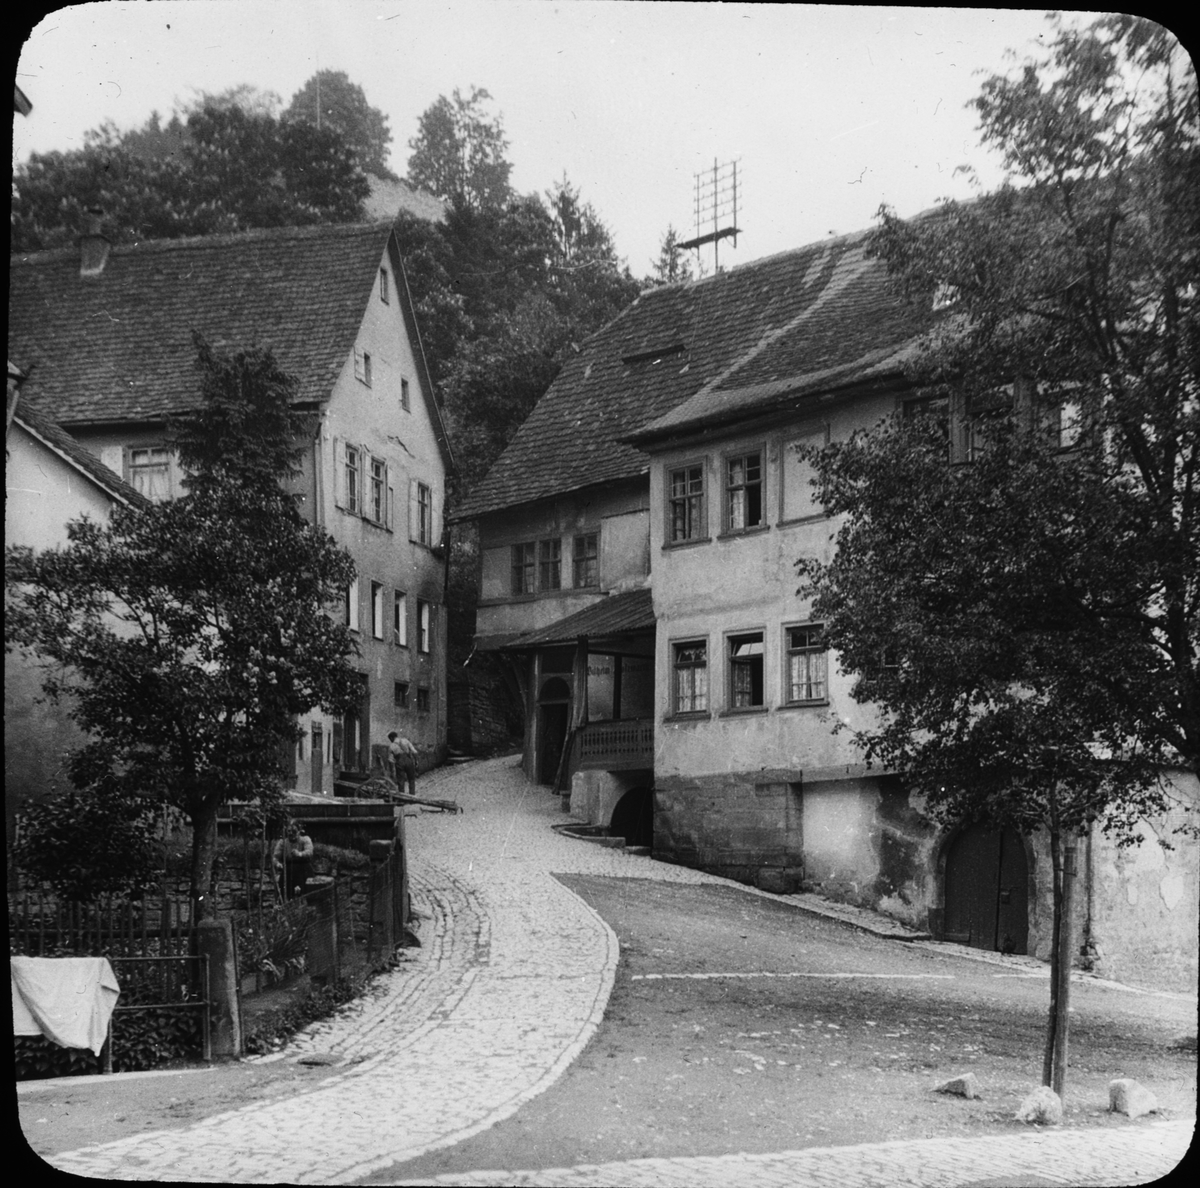 Skioptikonbild med gatumotiv från Schwäbisch Hall.
Bilden har förvarats i kartong märkt: Resan 1911. Schwäbische Hall. XVIII.